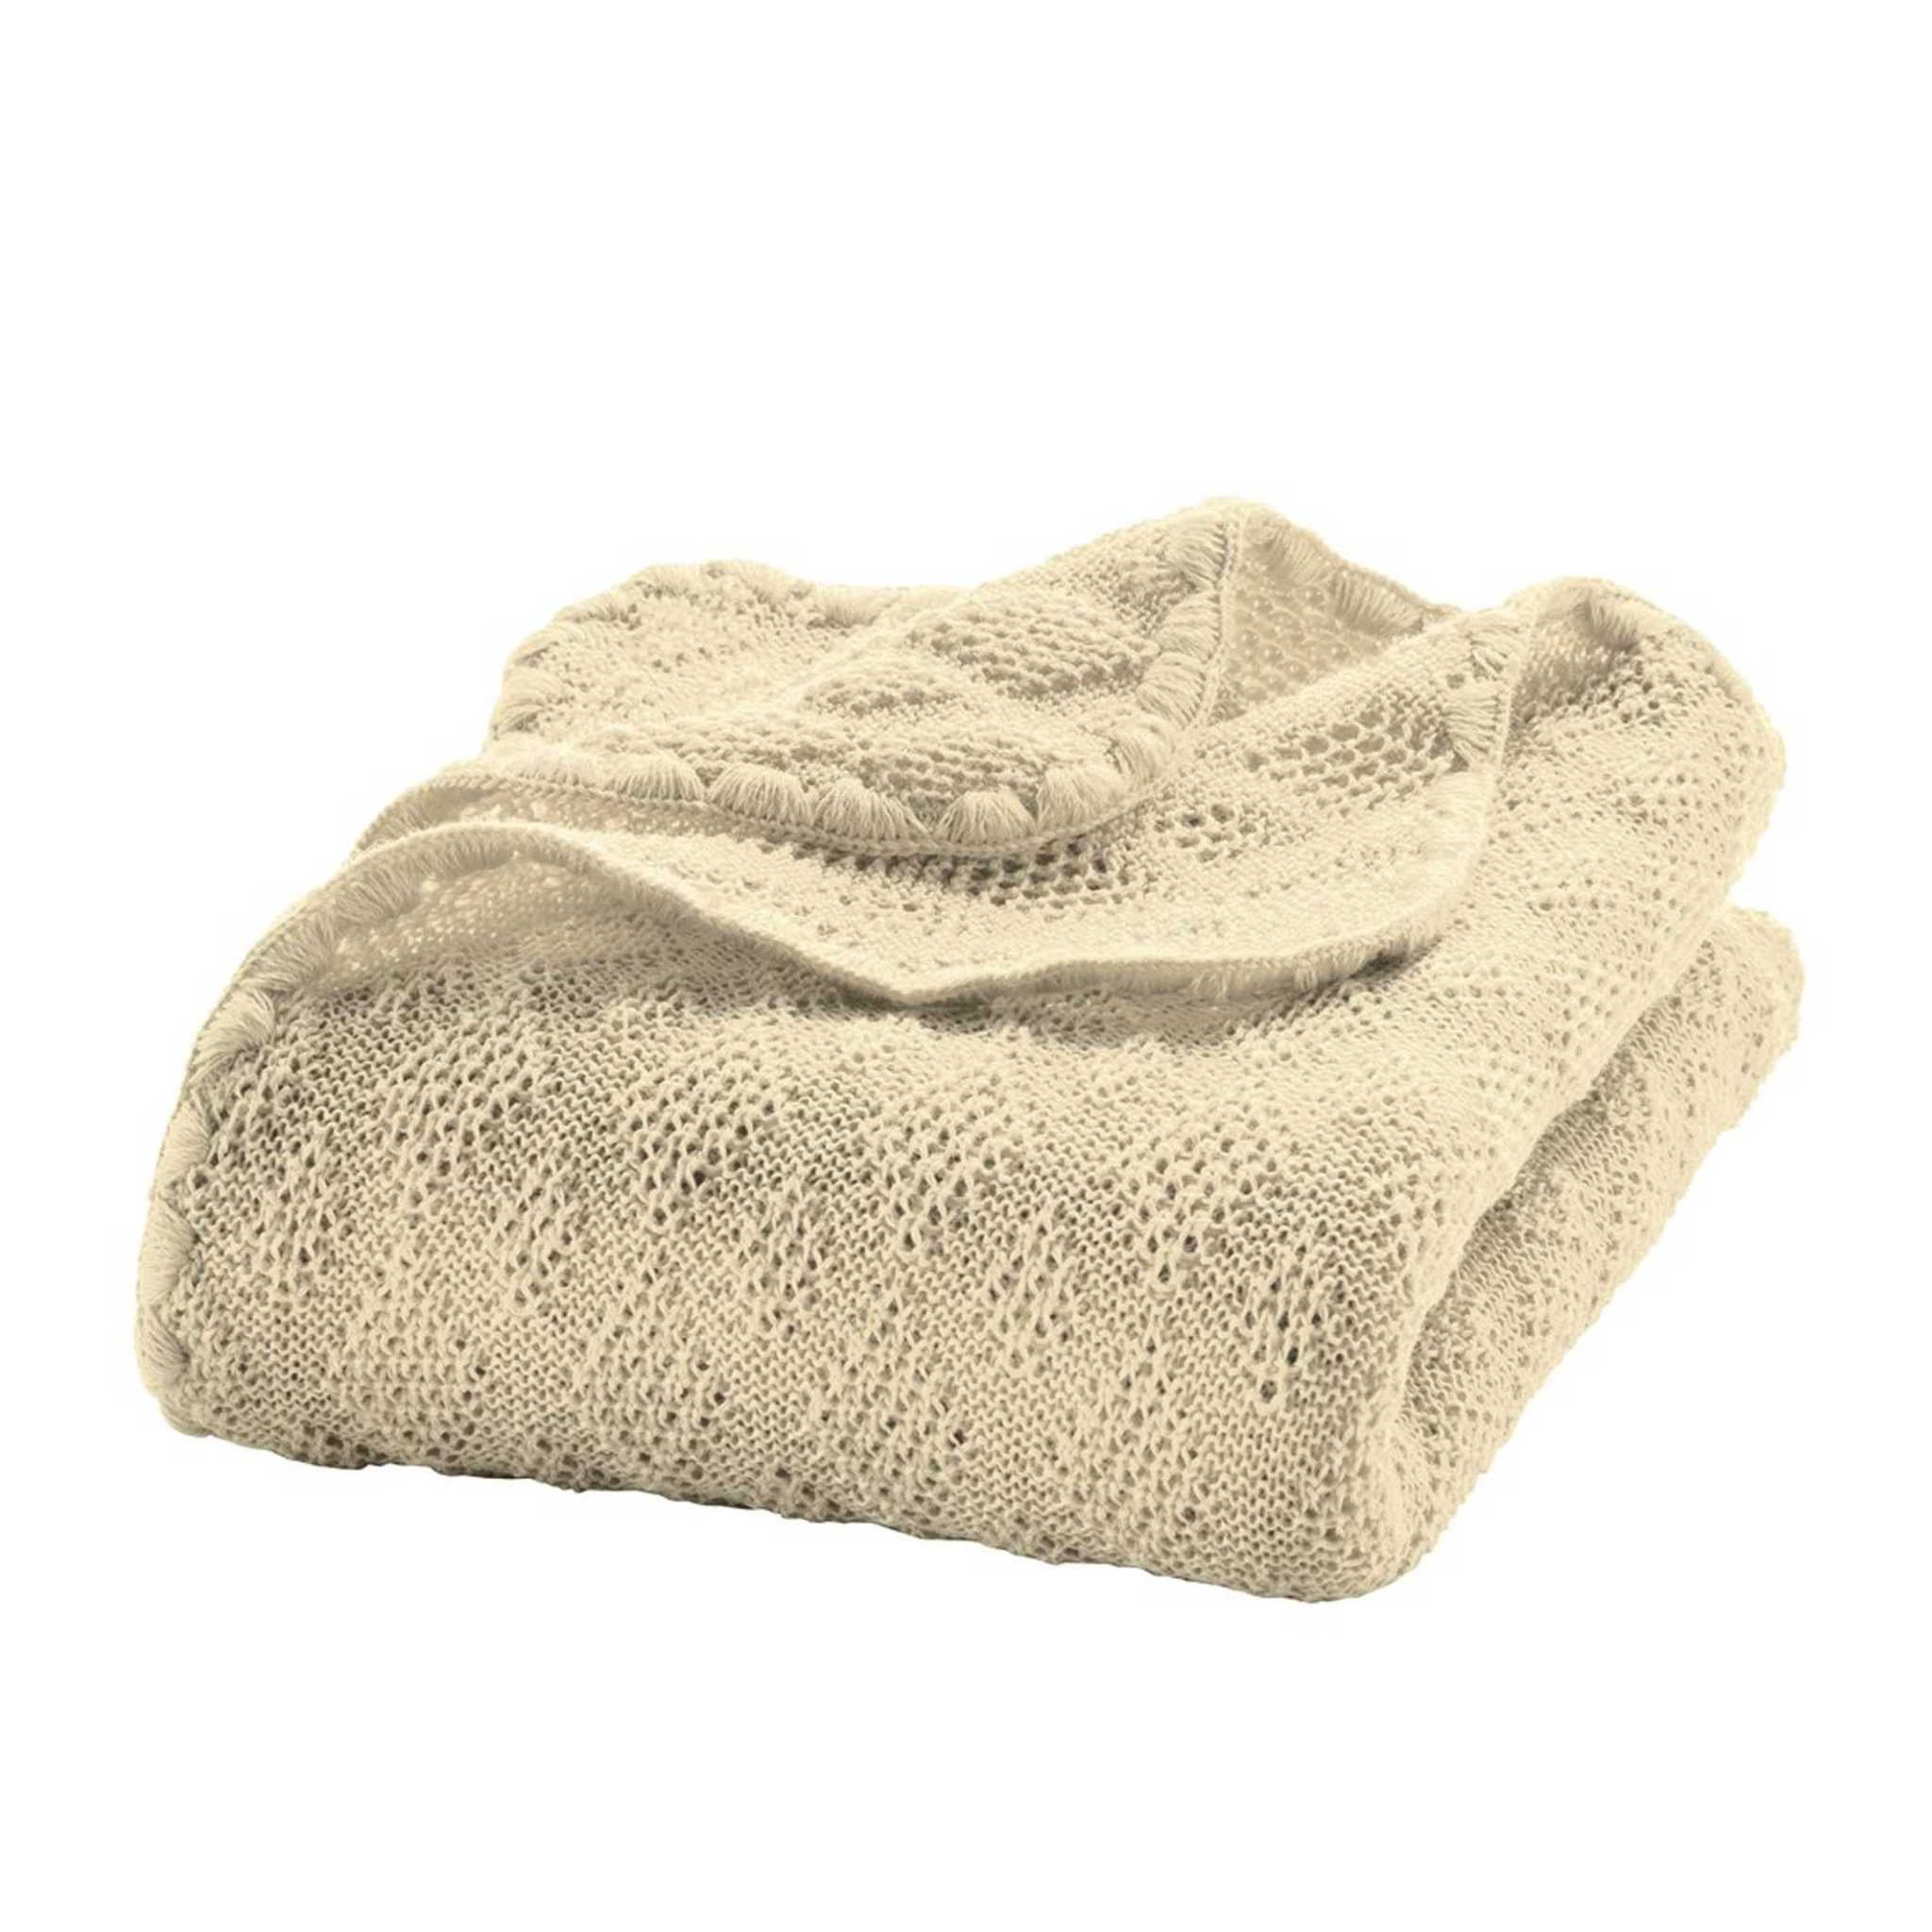 Disana Merino Wool Baby Blanket - Natural